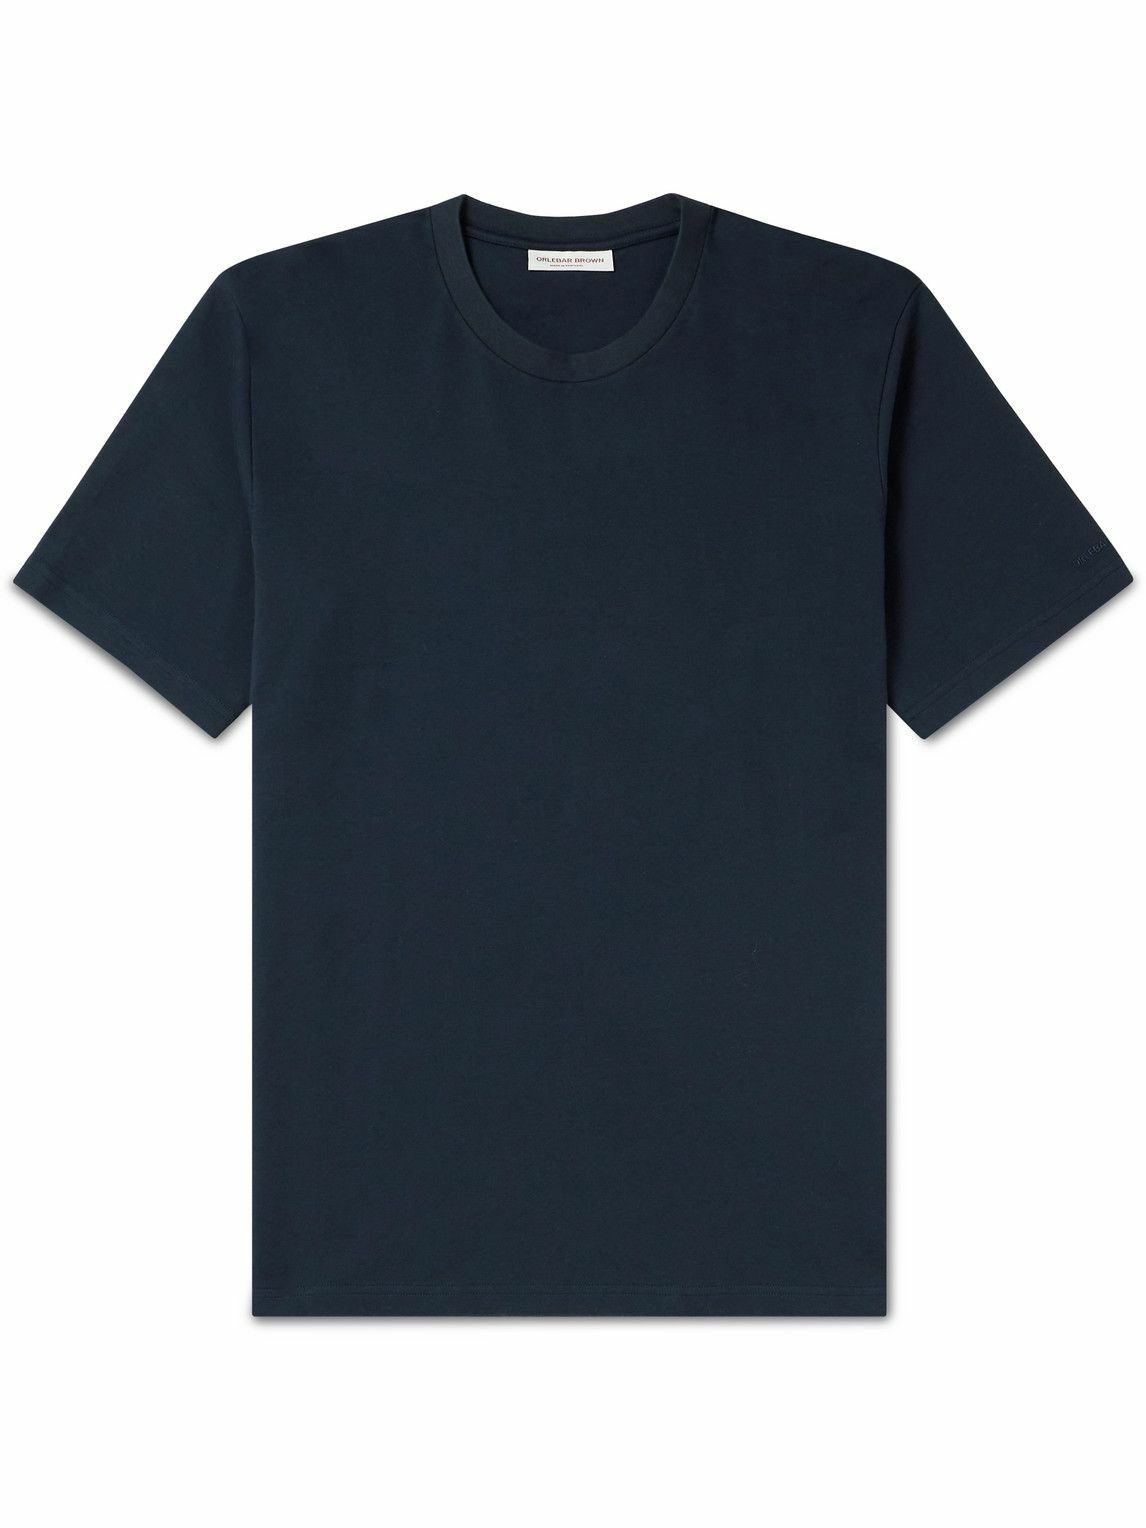 Photo: Orlebar Brown - Deckard Cotton-Jersey T-Shirt - Blue